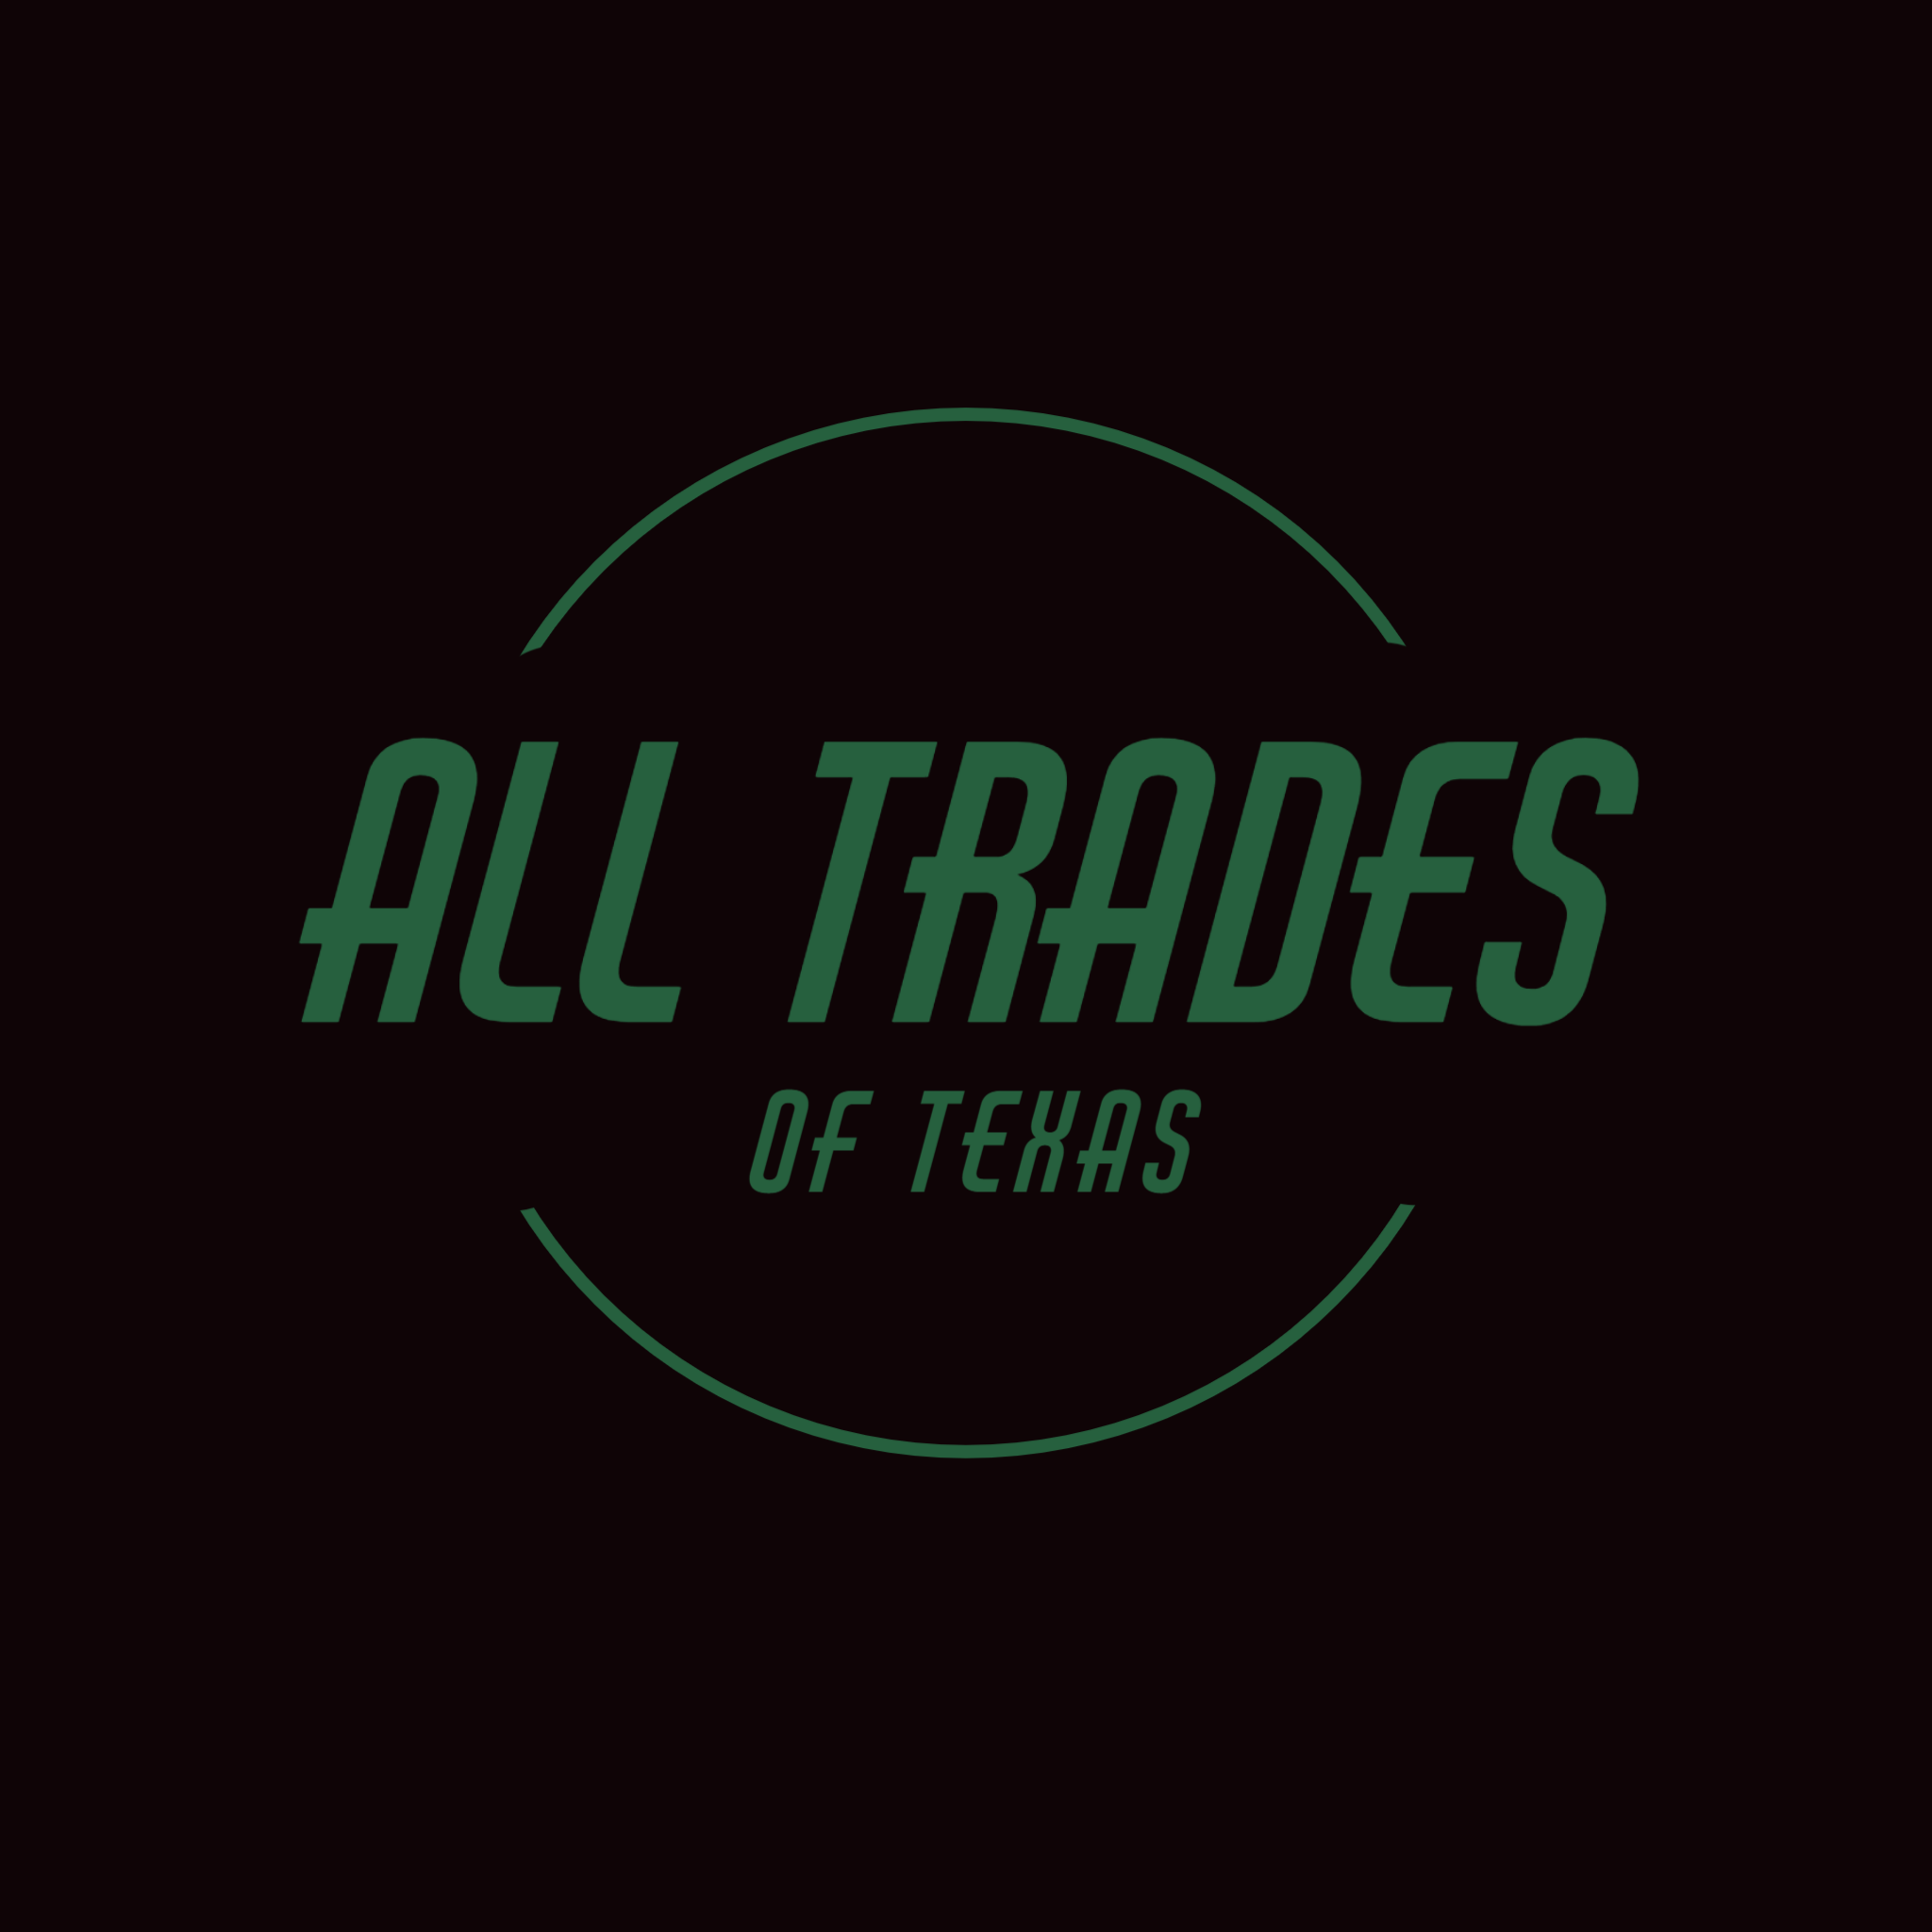 All Trades of Texas Logo